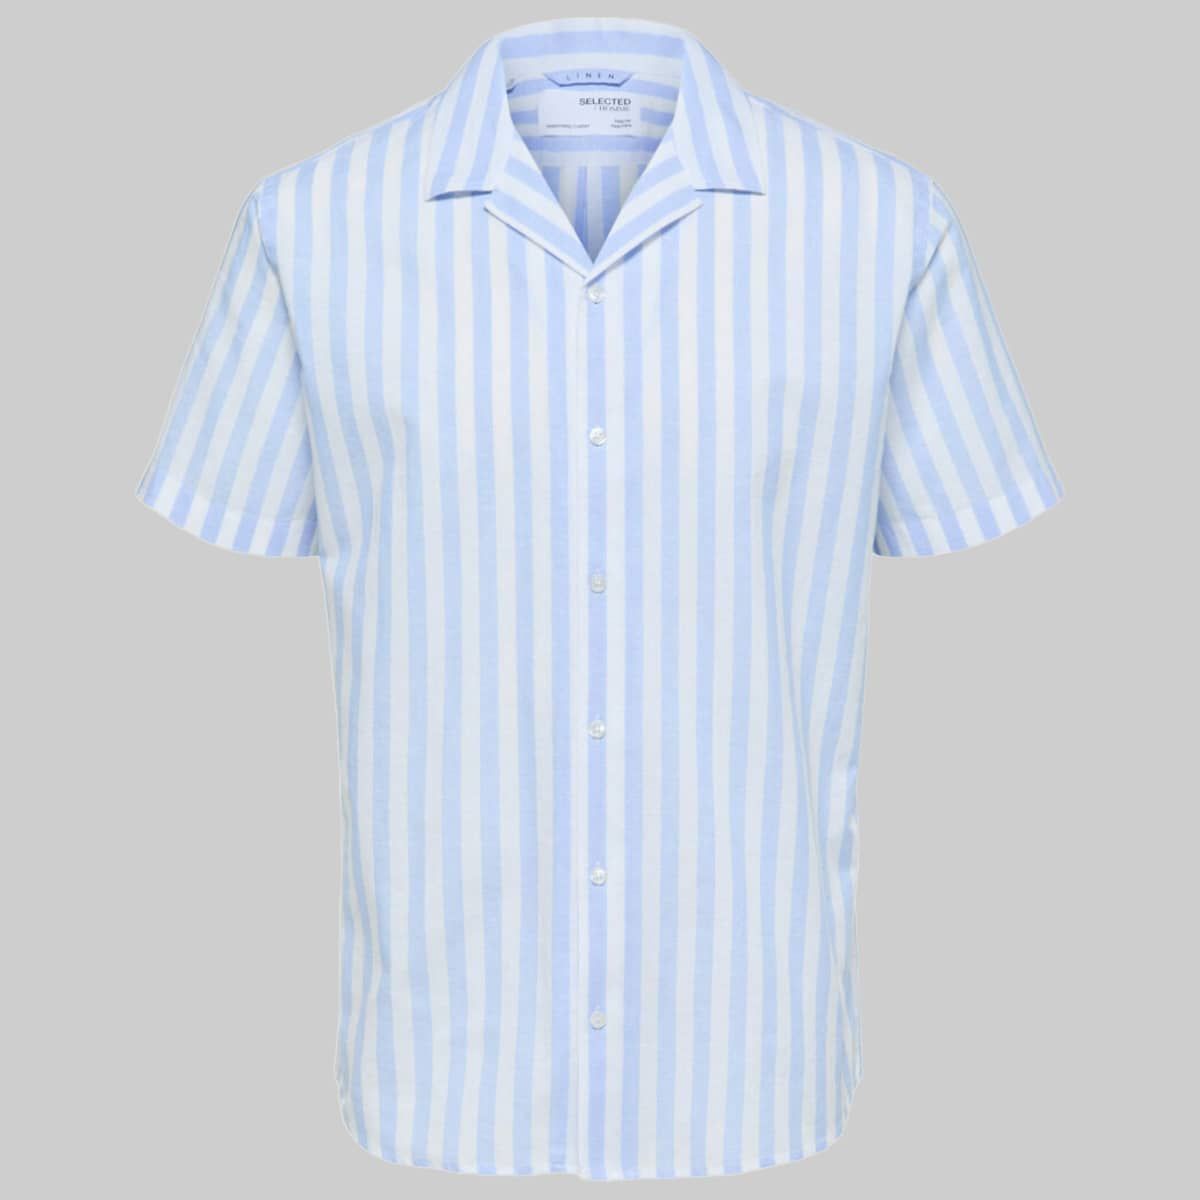 Linen Cuban Shirt Light Blue